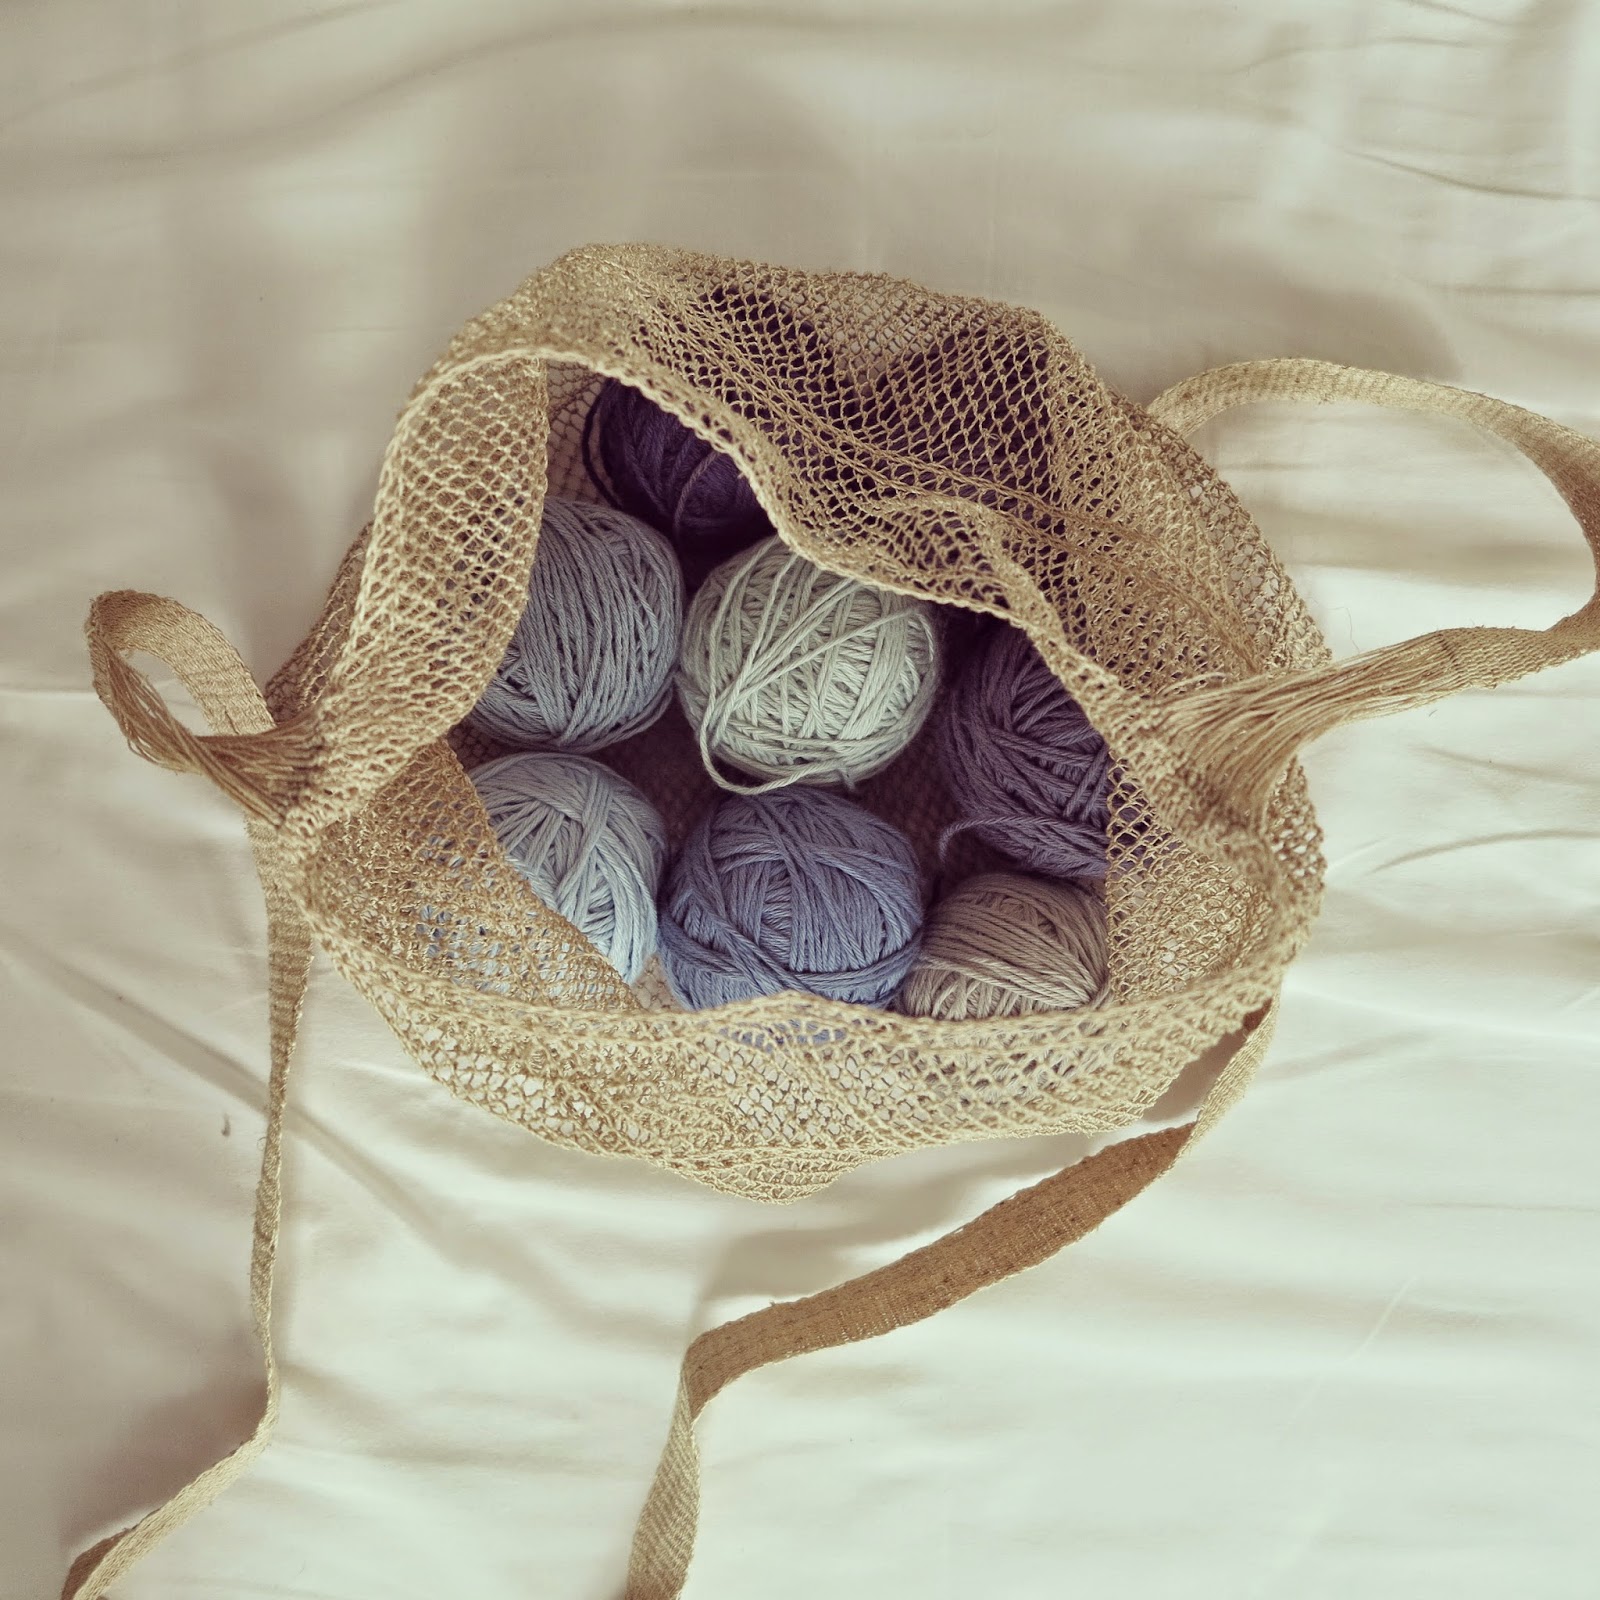 ByHaafner, natural fibres, cotton yarn